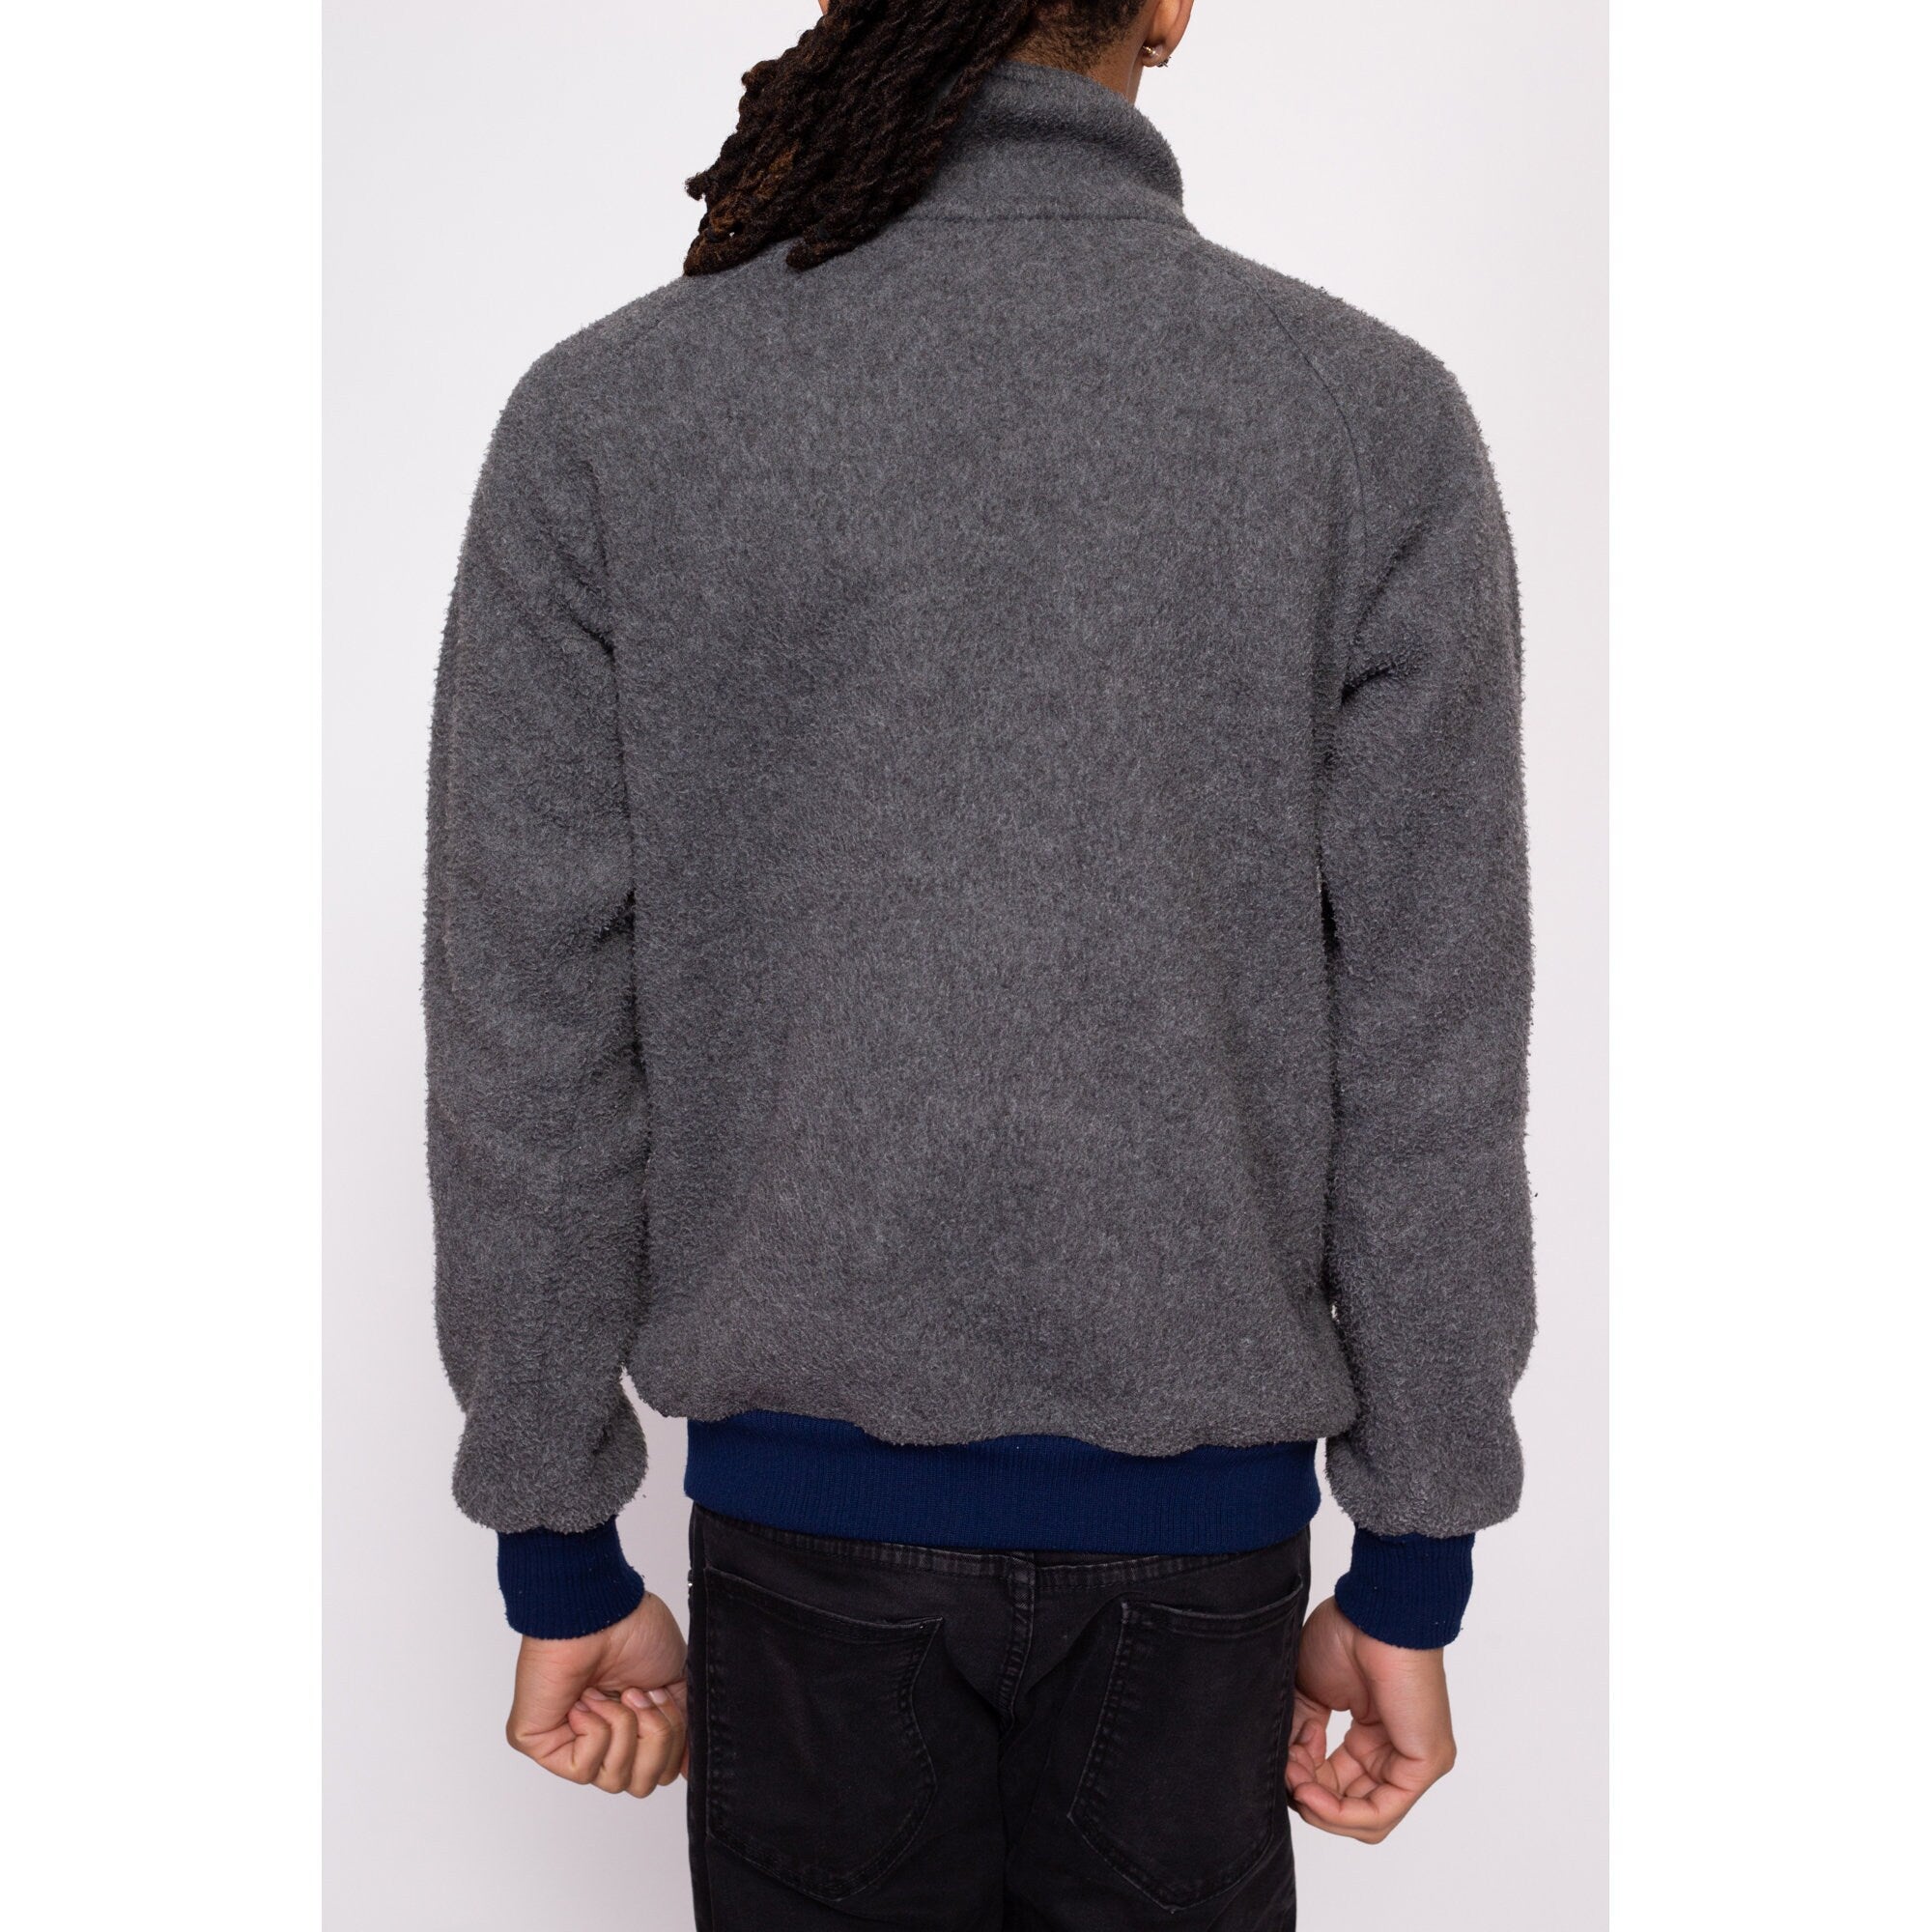 80s Patagonia Fleece Zip Up Sweatshirt - Men's Small